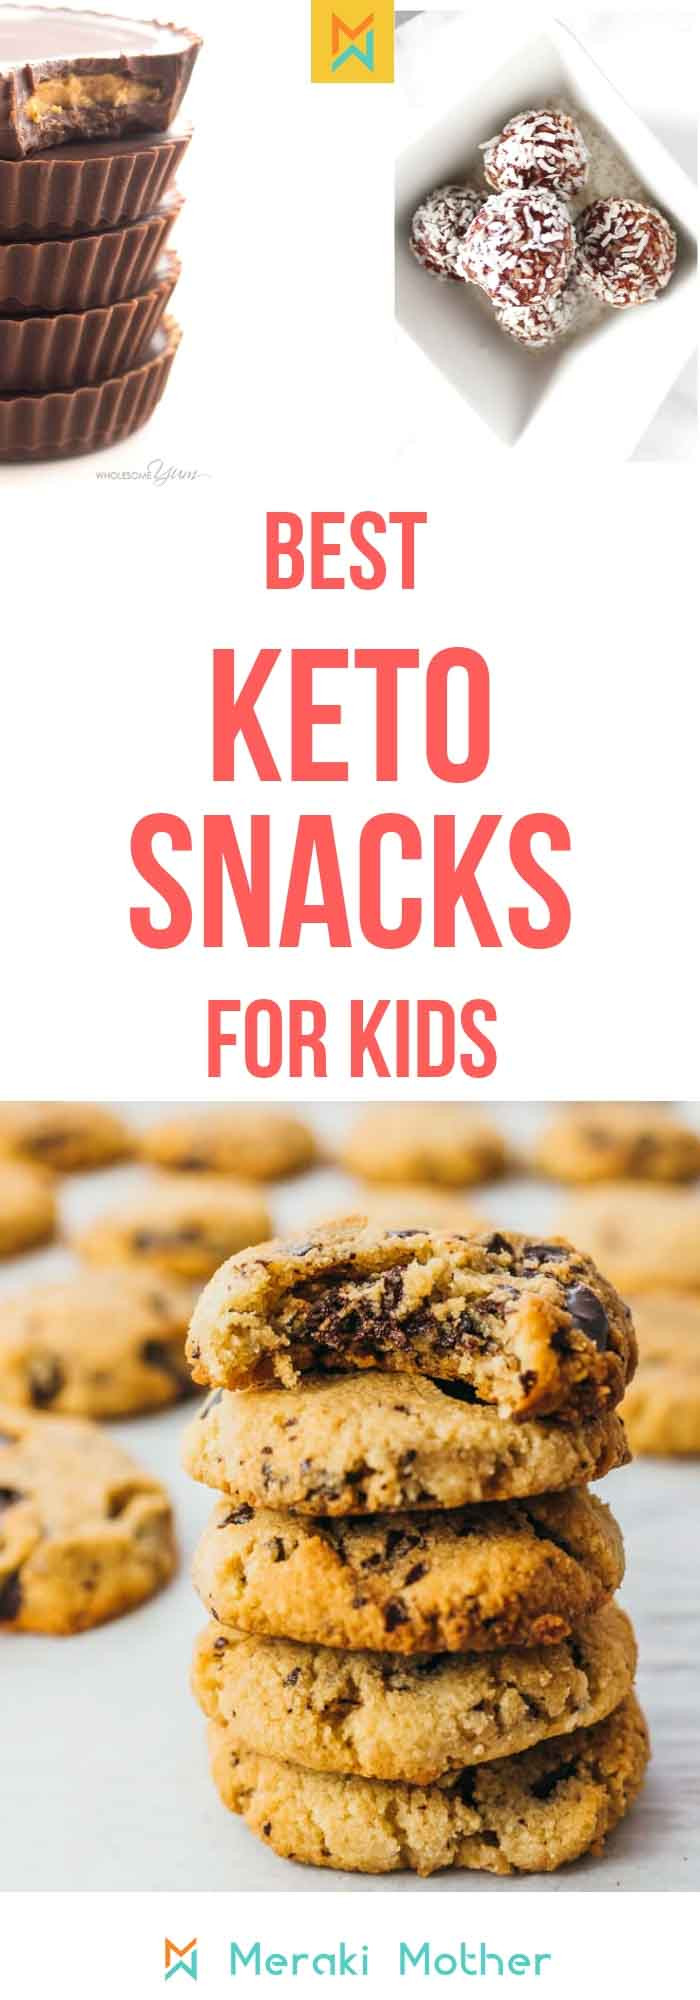 Keto Diet Snacks For Kids
 Tasty Kid Friendly Keto Snack Recipes Meraki Mother